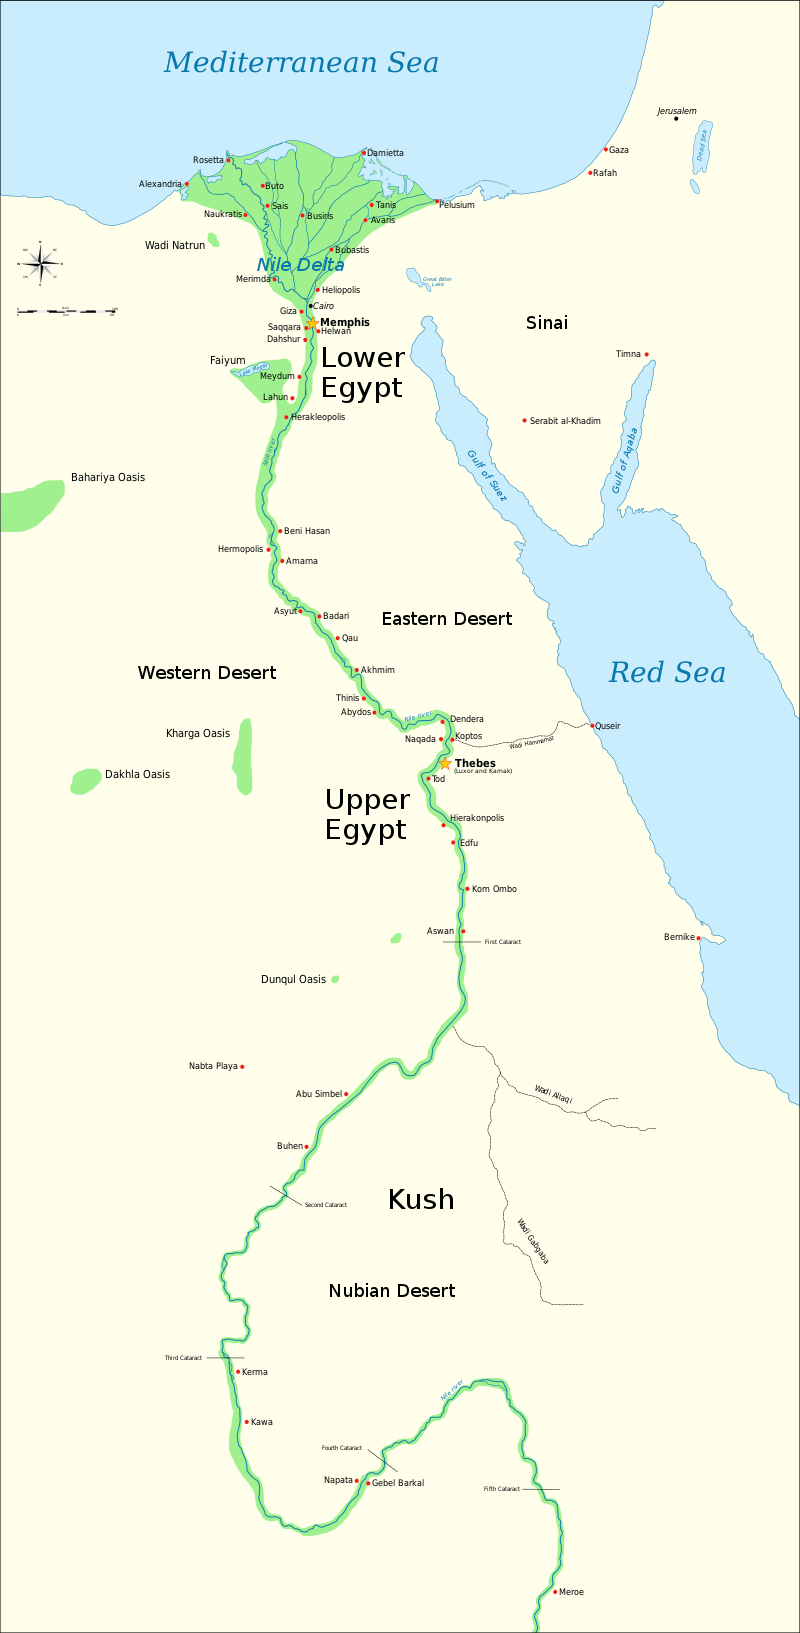 Карта Куша и Древнего Египта, показывающая Нил до пятого порога, а также крупные города и памятники периода древнеегипетской династии (3150 г. до н.э. - 30 г. до н.э.) (карта: Джефф Даль, CC Y-SA 4.0)